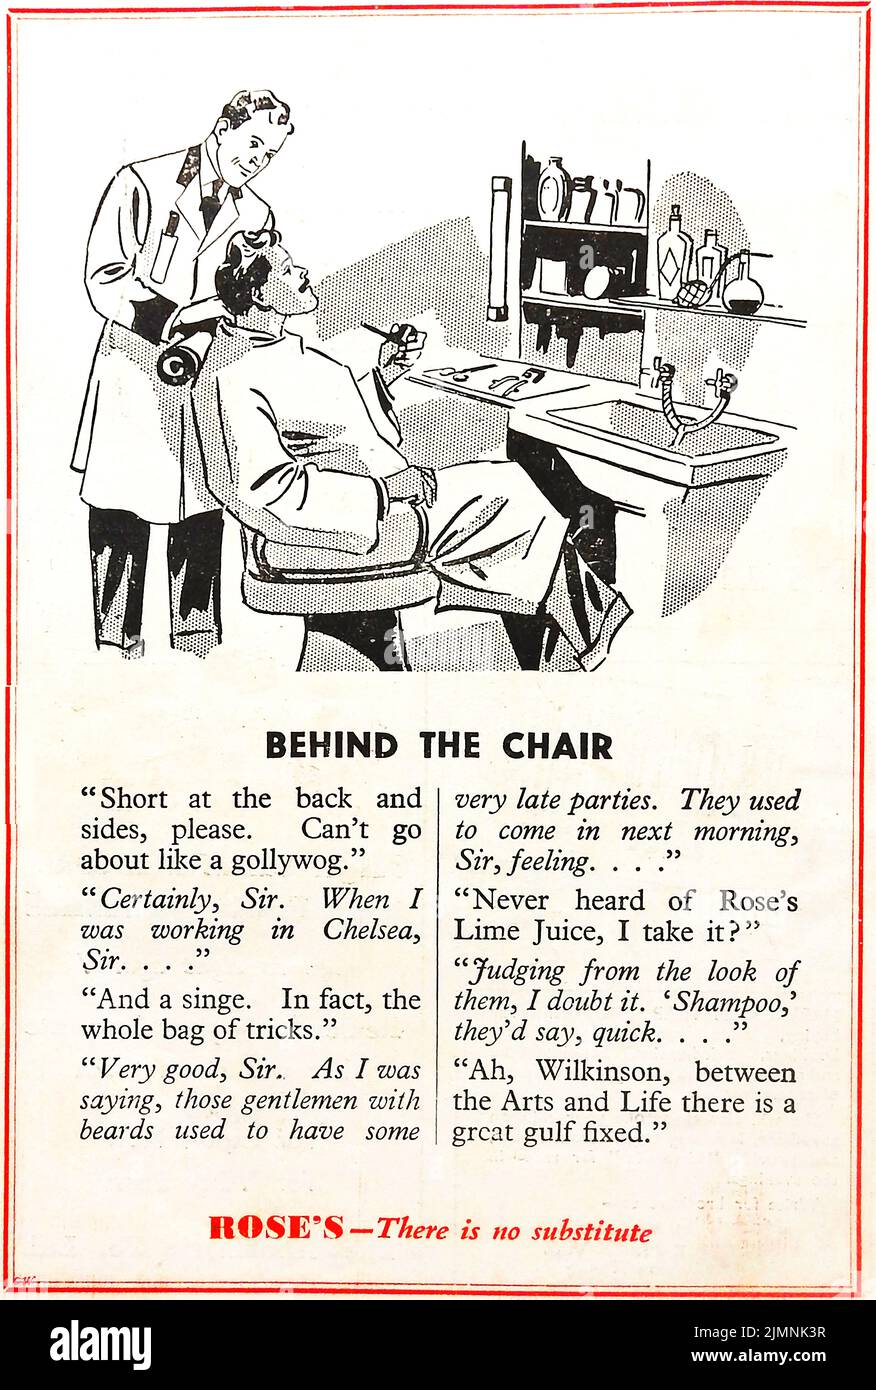 Une publicité britannique inhabituelle des années 1940 pour Rose's Lime Juice qui enregistre une conversation qui semble border le racisme courant prévalant à cette époque. Banque D'Images